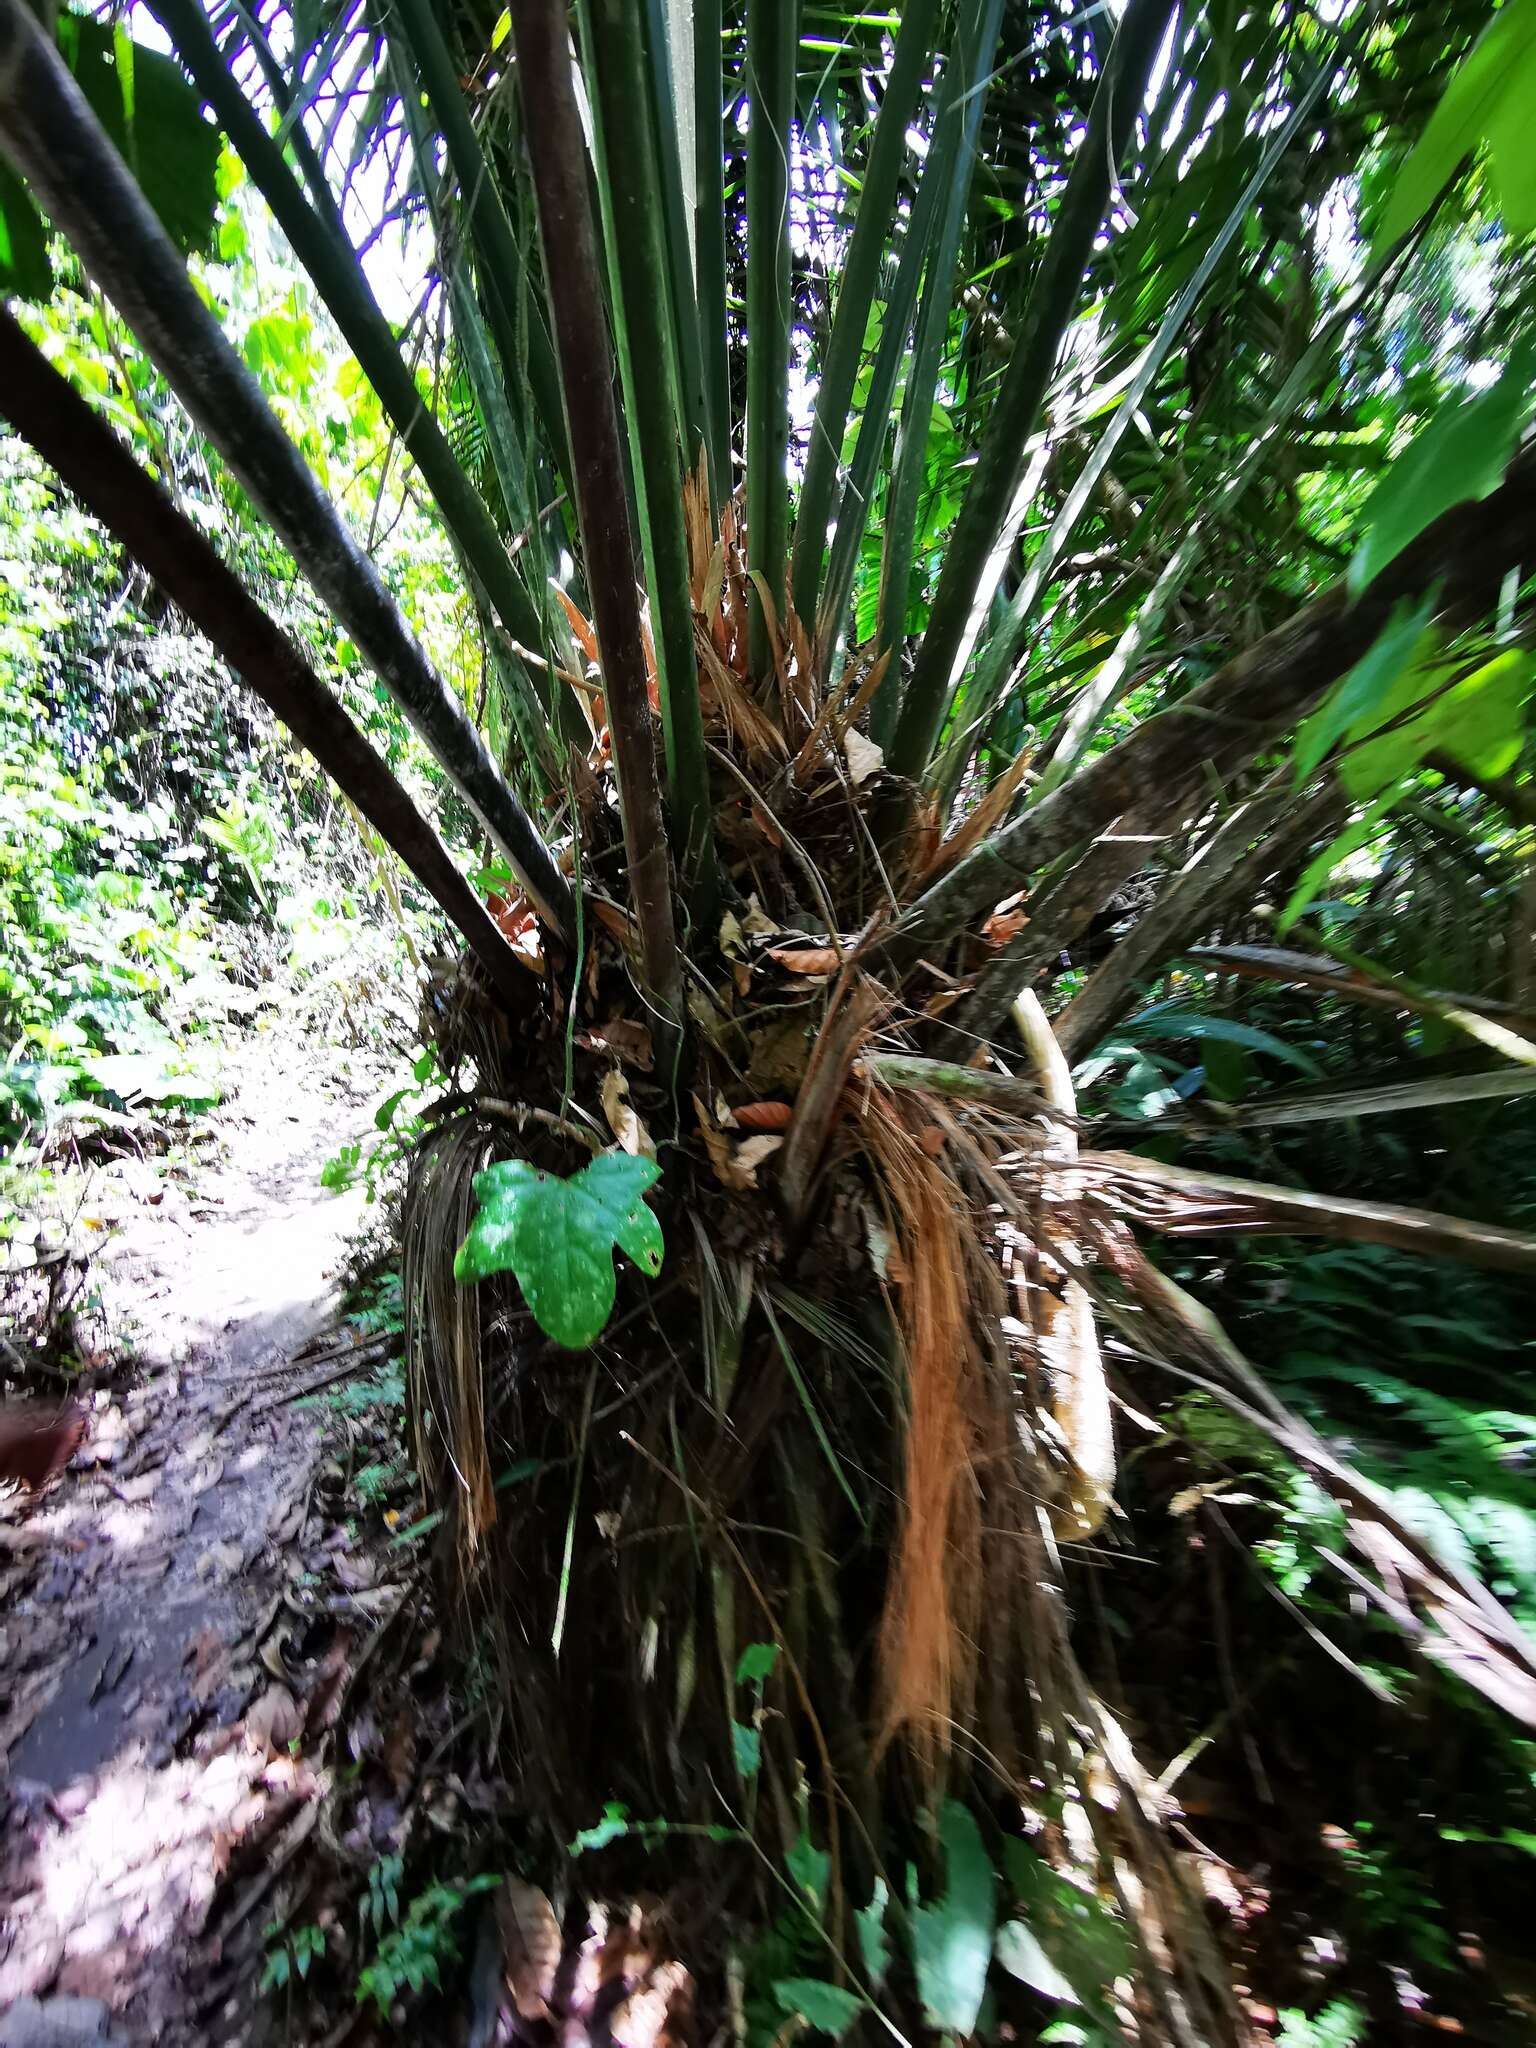 Image of ivory nut palm